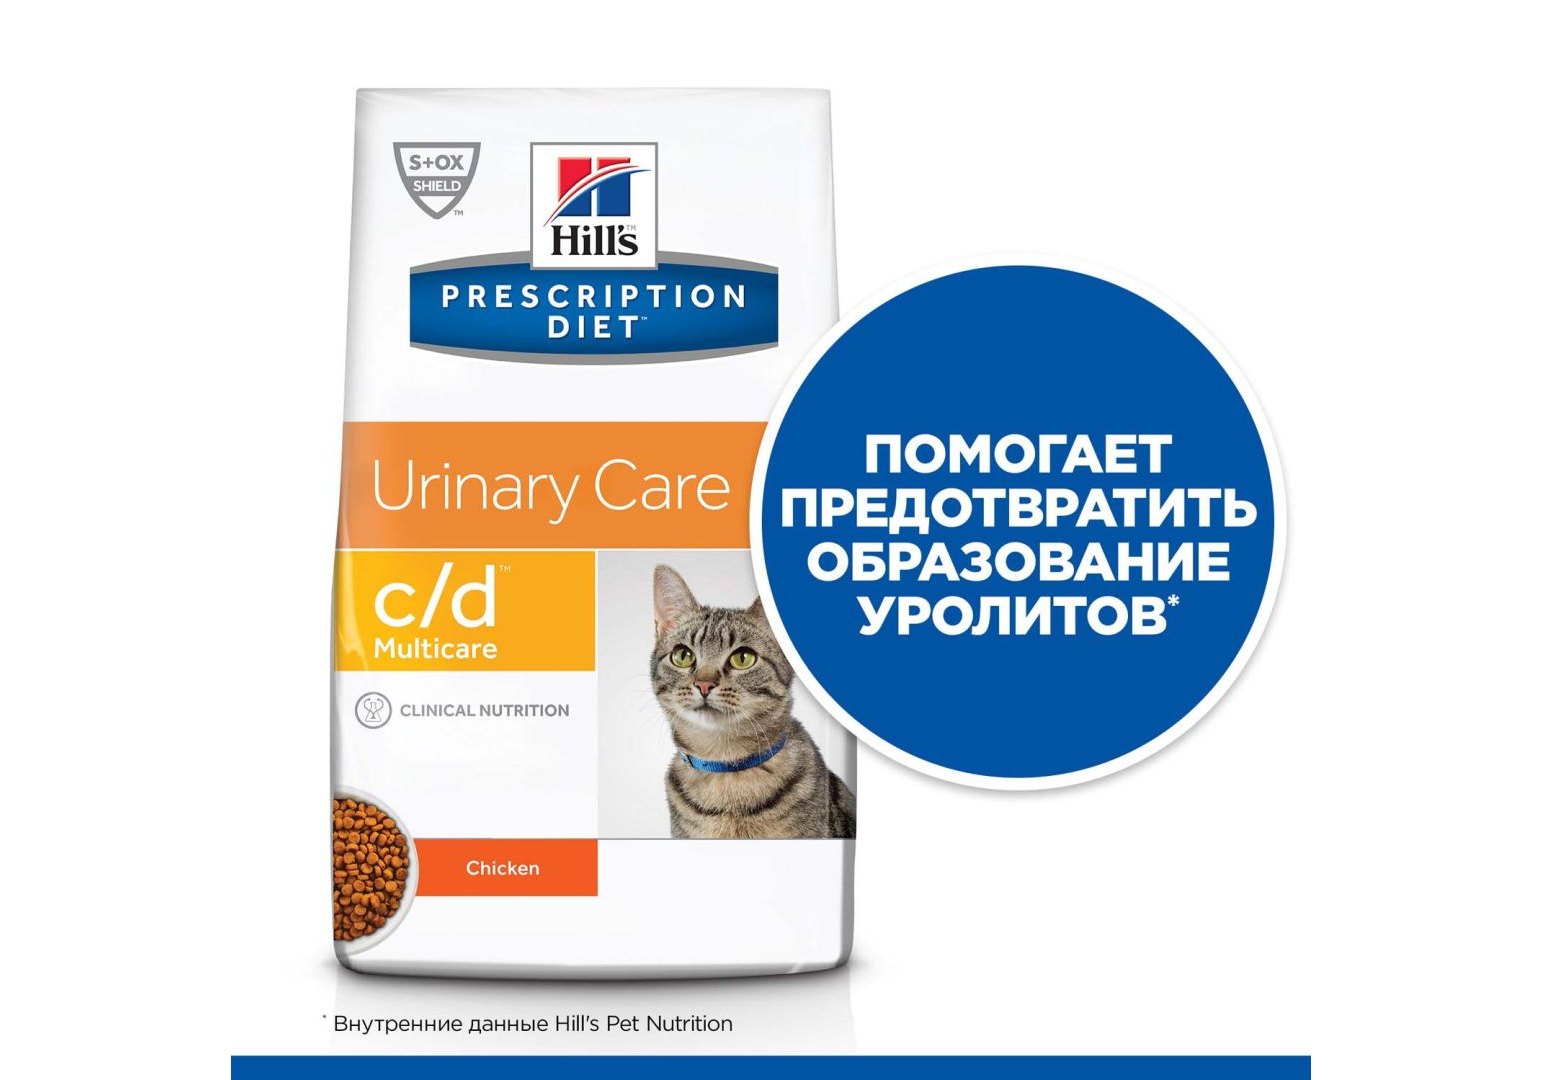 Hills Prescription Diet c\d Multicare Urinary Care / Лечебный корм Хиллс  для кошек при МКБ Курица 400 г купить в Москве по низкой цене 830₽ |  интернет-магазин ZooMag.ru